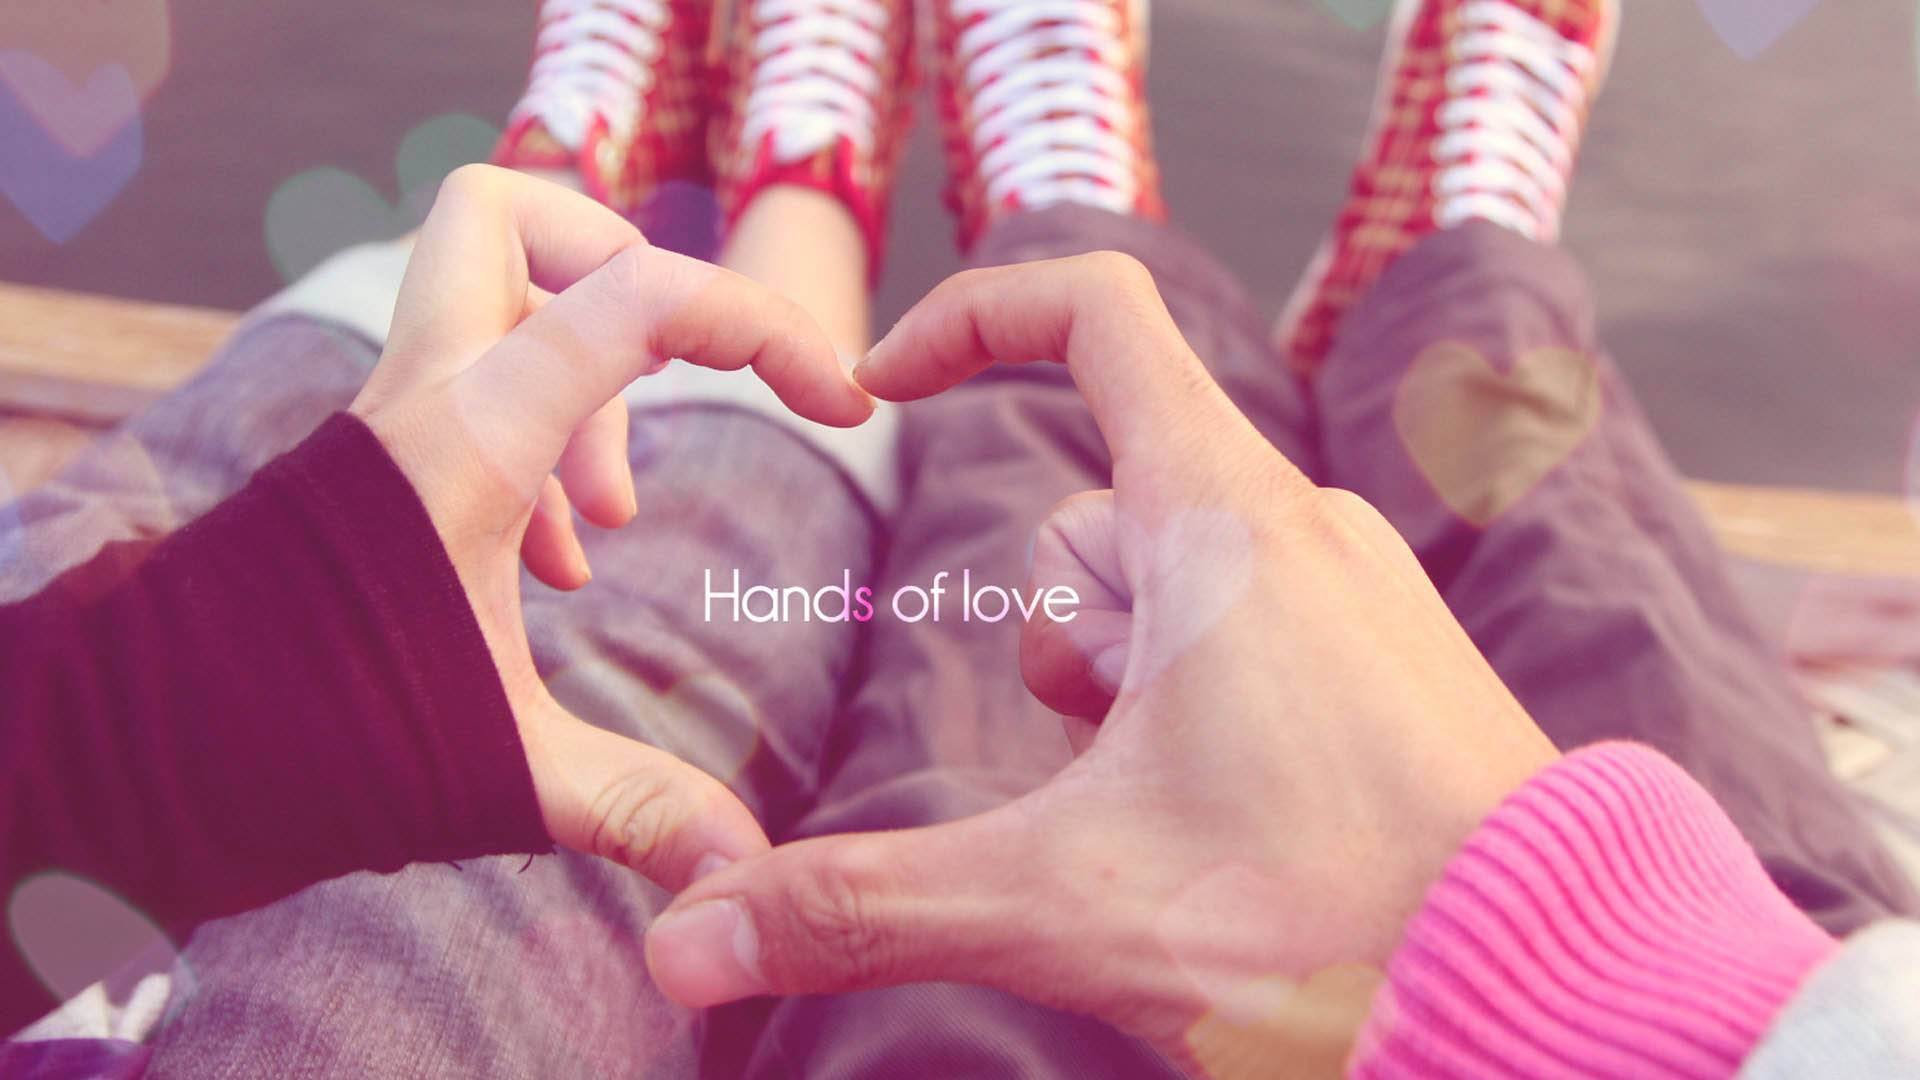 3d обои Парень и девушка сидят вытянув ноги и сложив из рук сердечко (Hands of love)  фразы # 83694